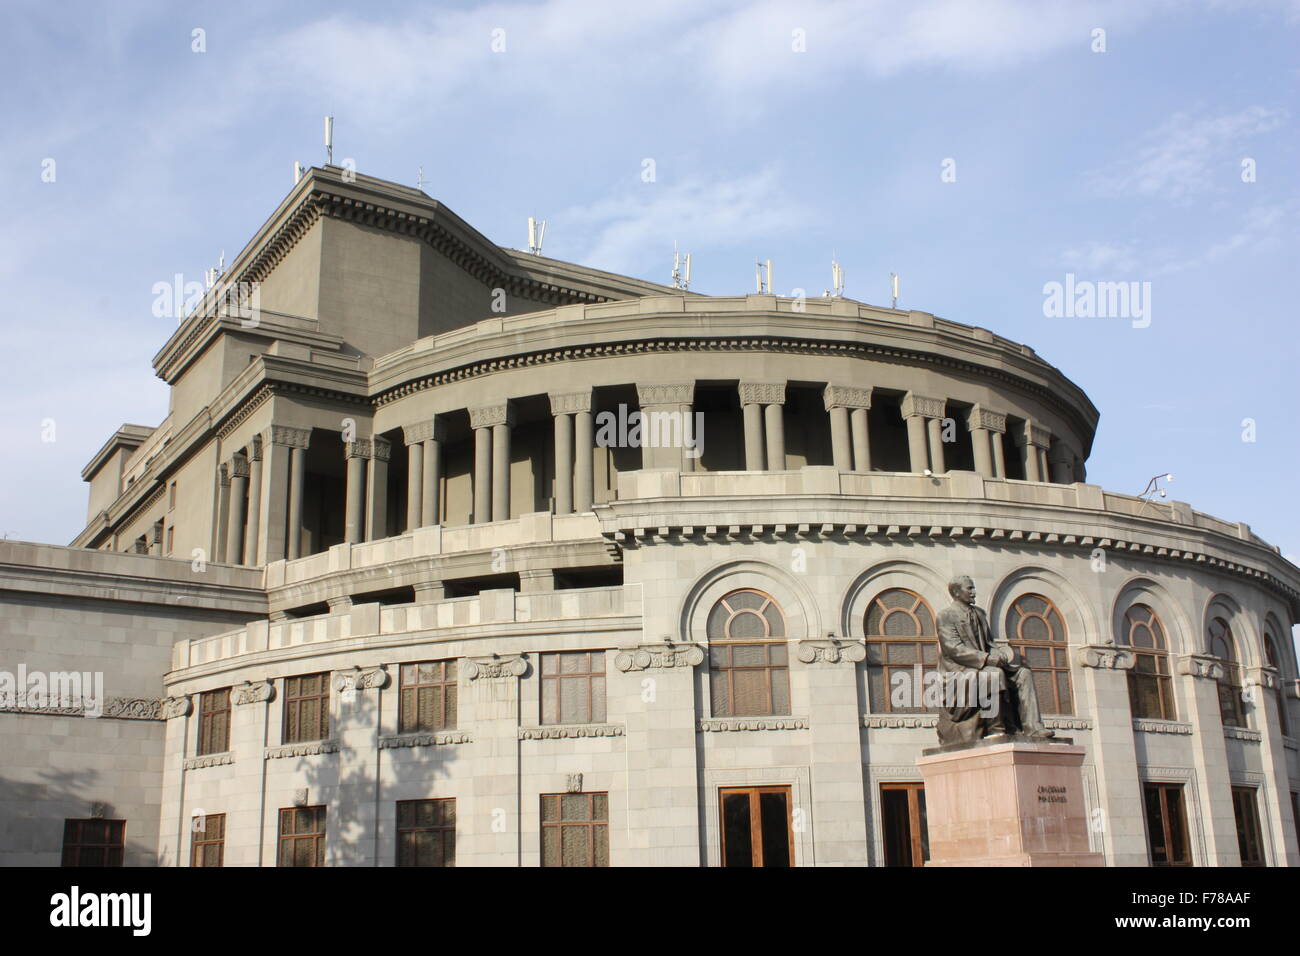 The Opera House in Yerevan Stock Photo